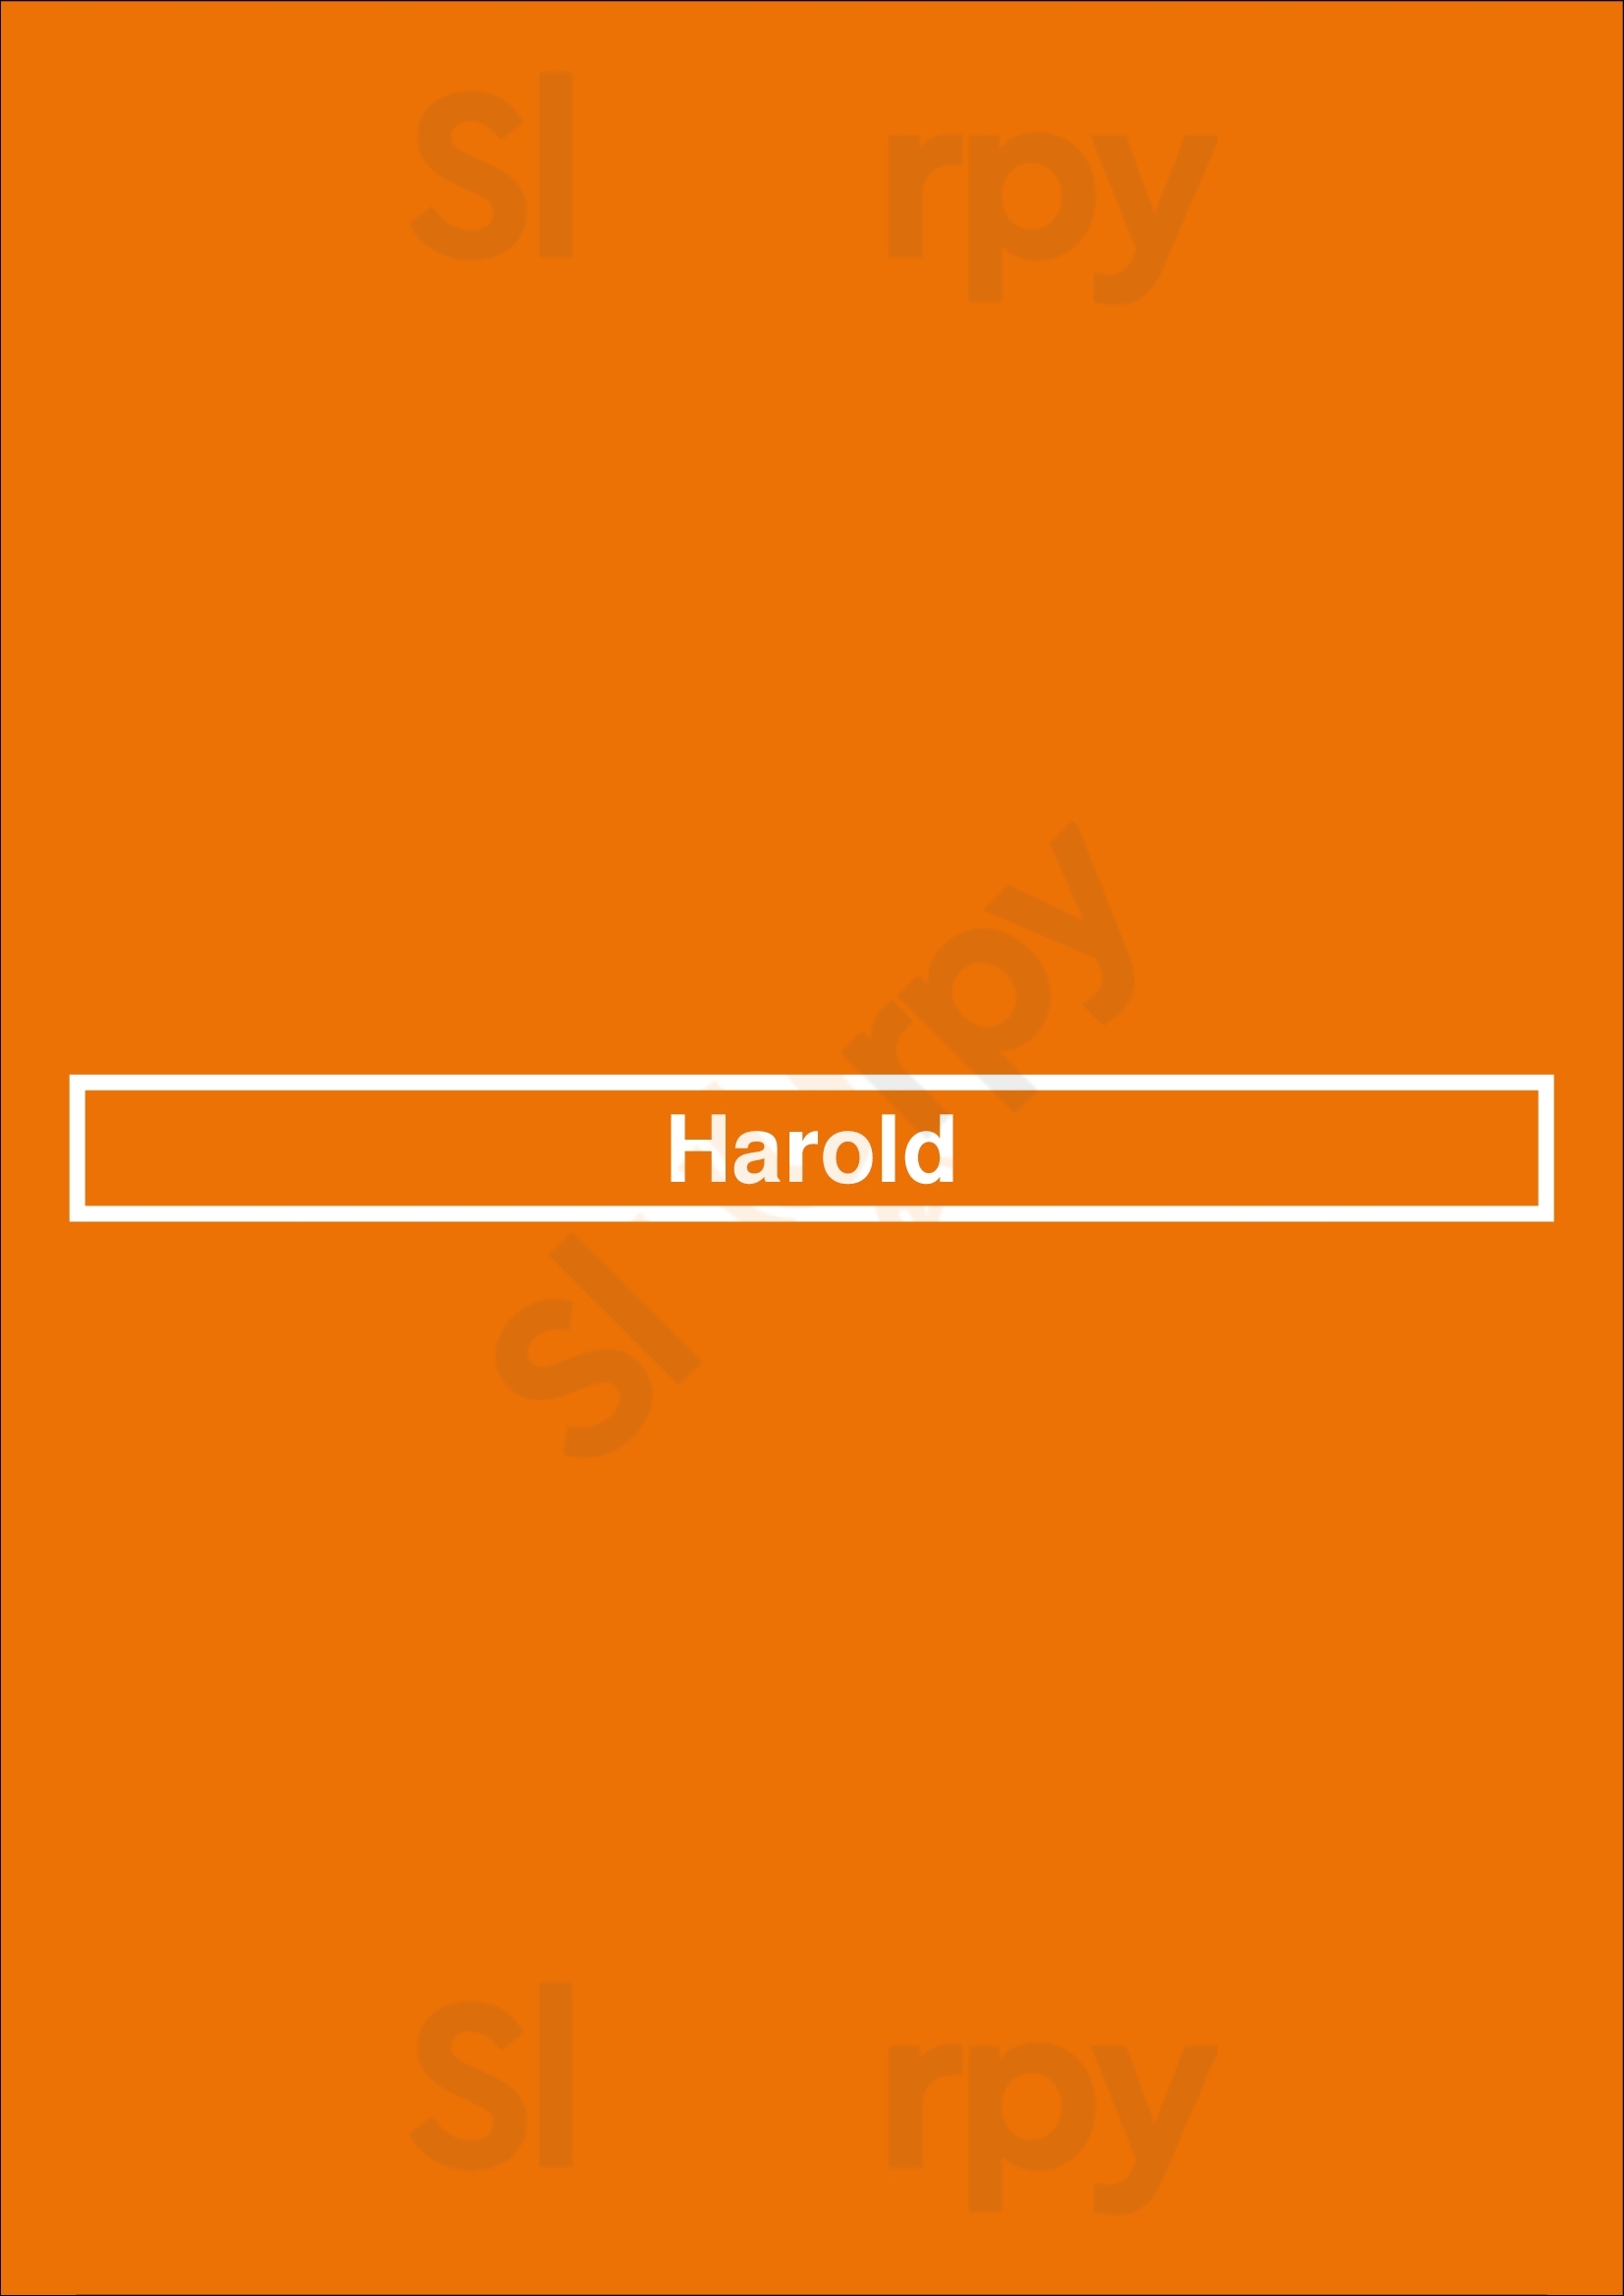 Harold Uccle Menu - 1